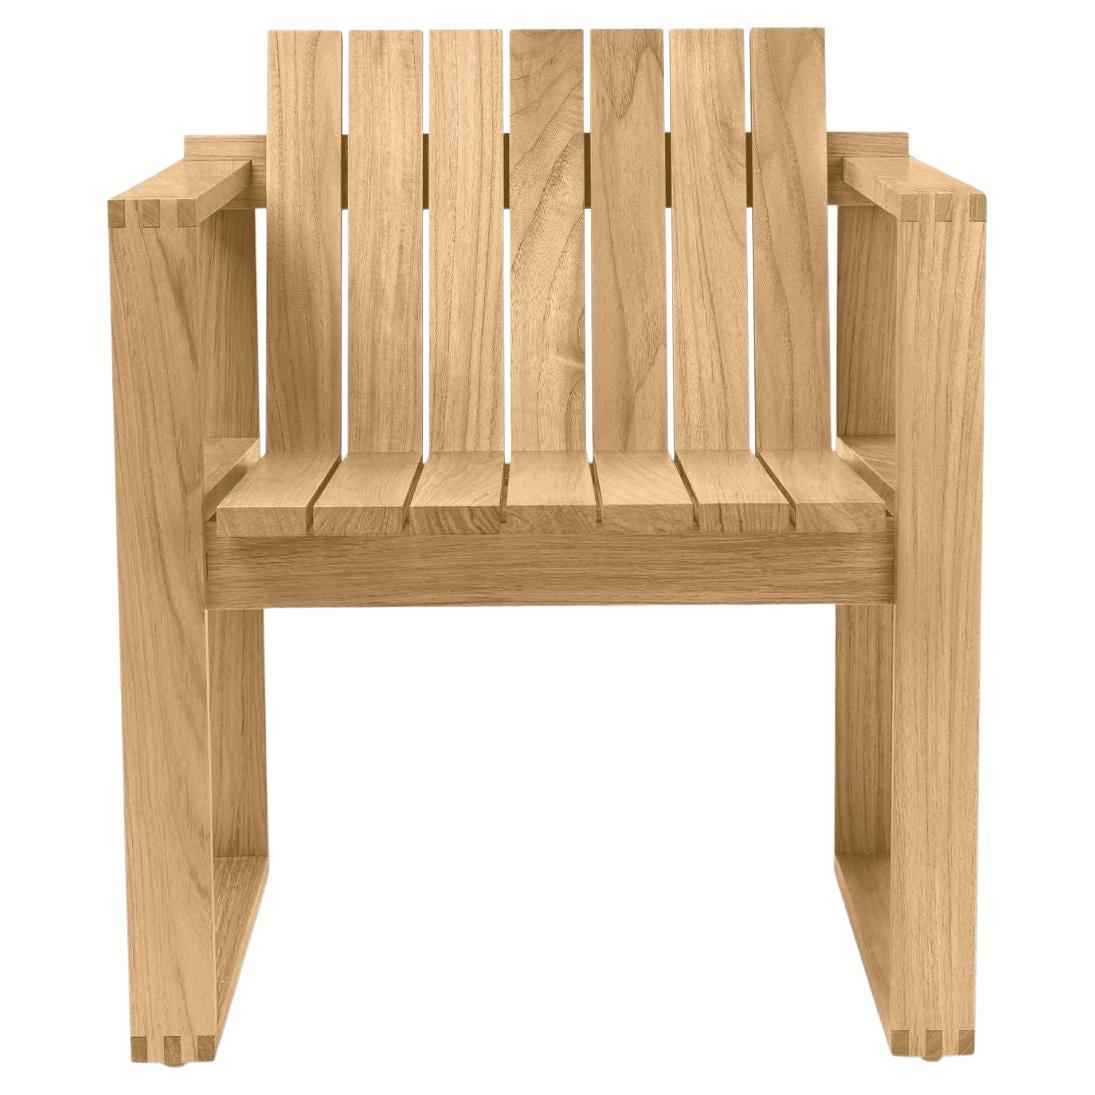 Bodil Kjaer Outdoor 'BK10' Dining Chair in Teak for Carl Hansen & Son For Sale